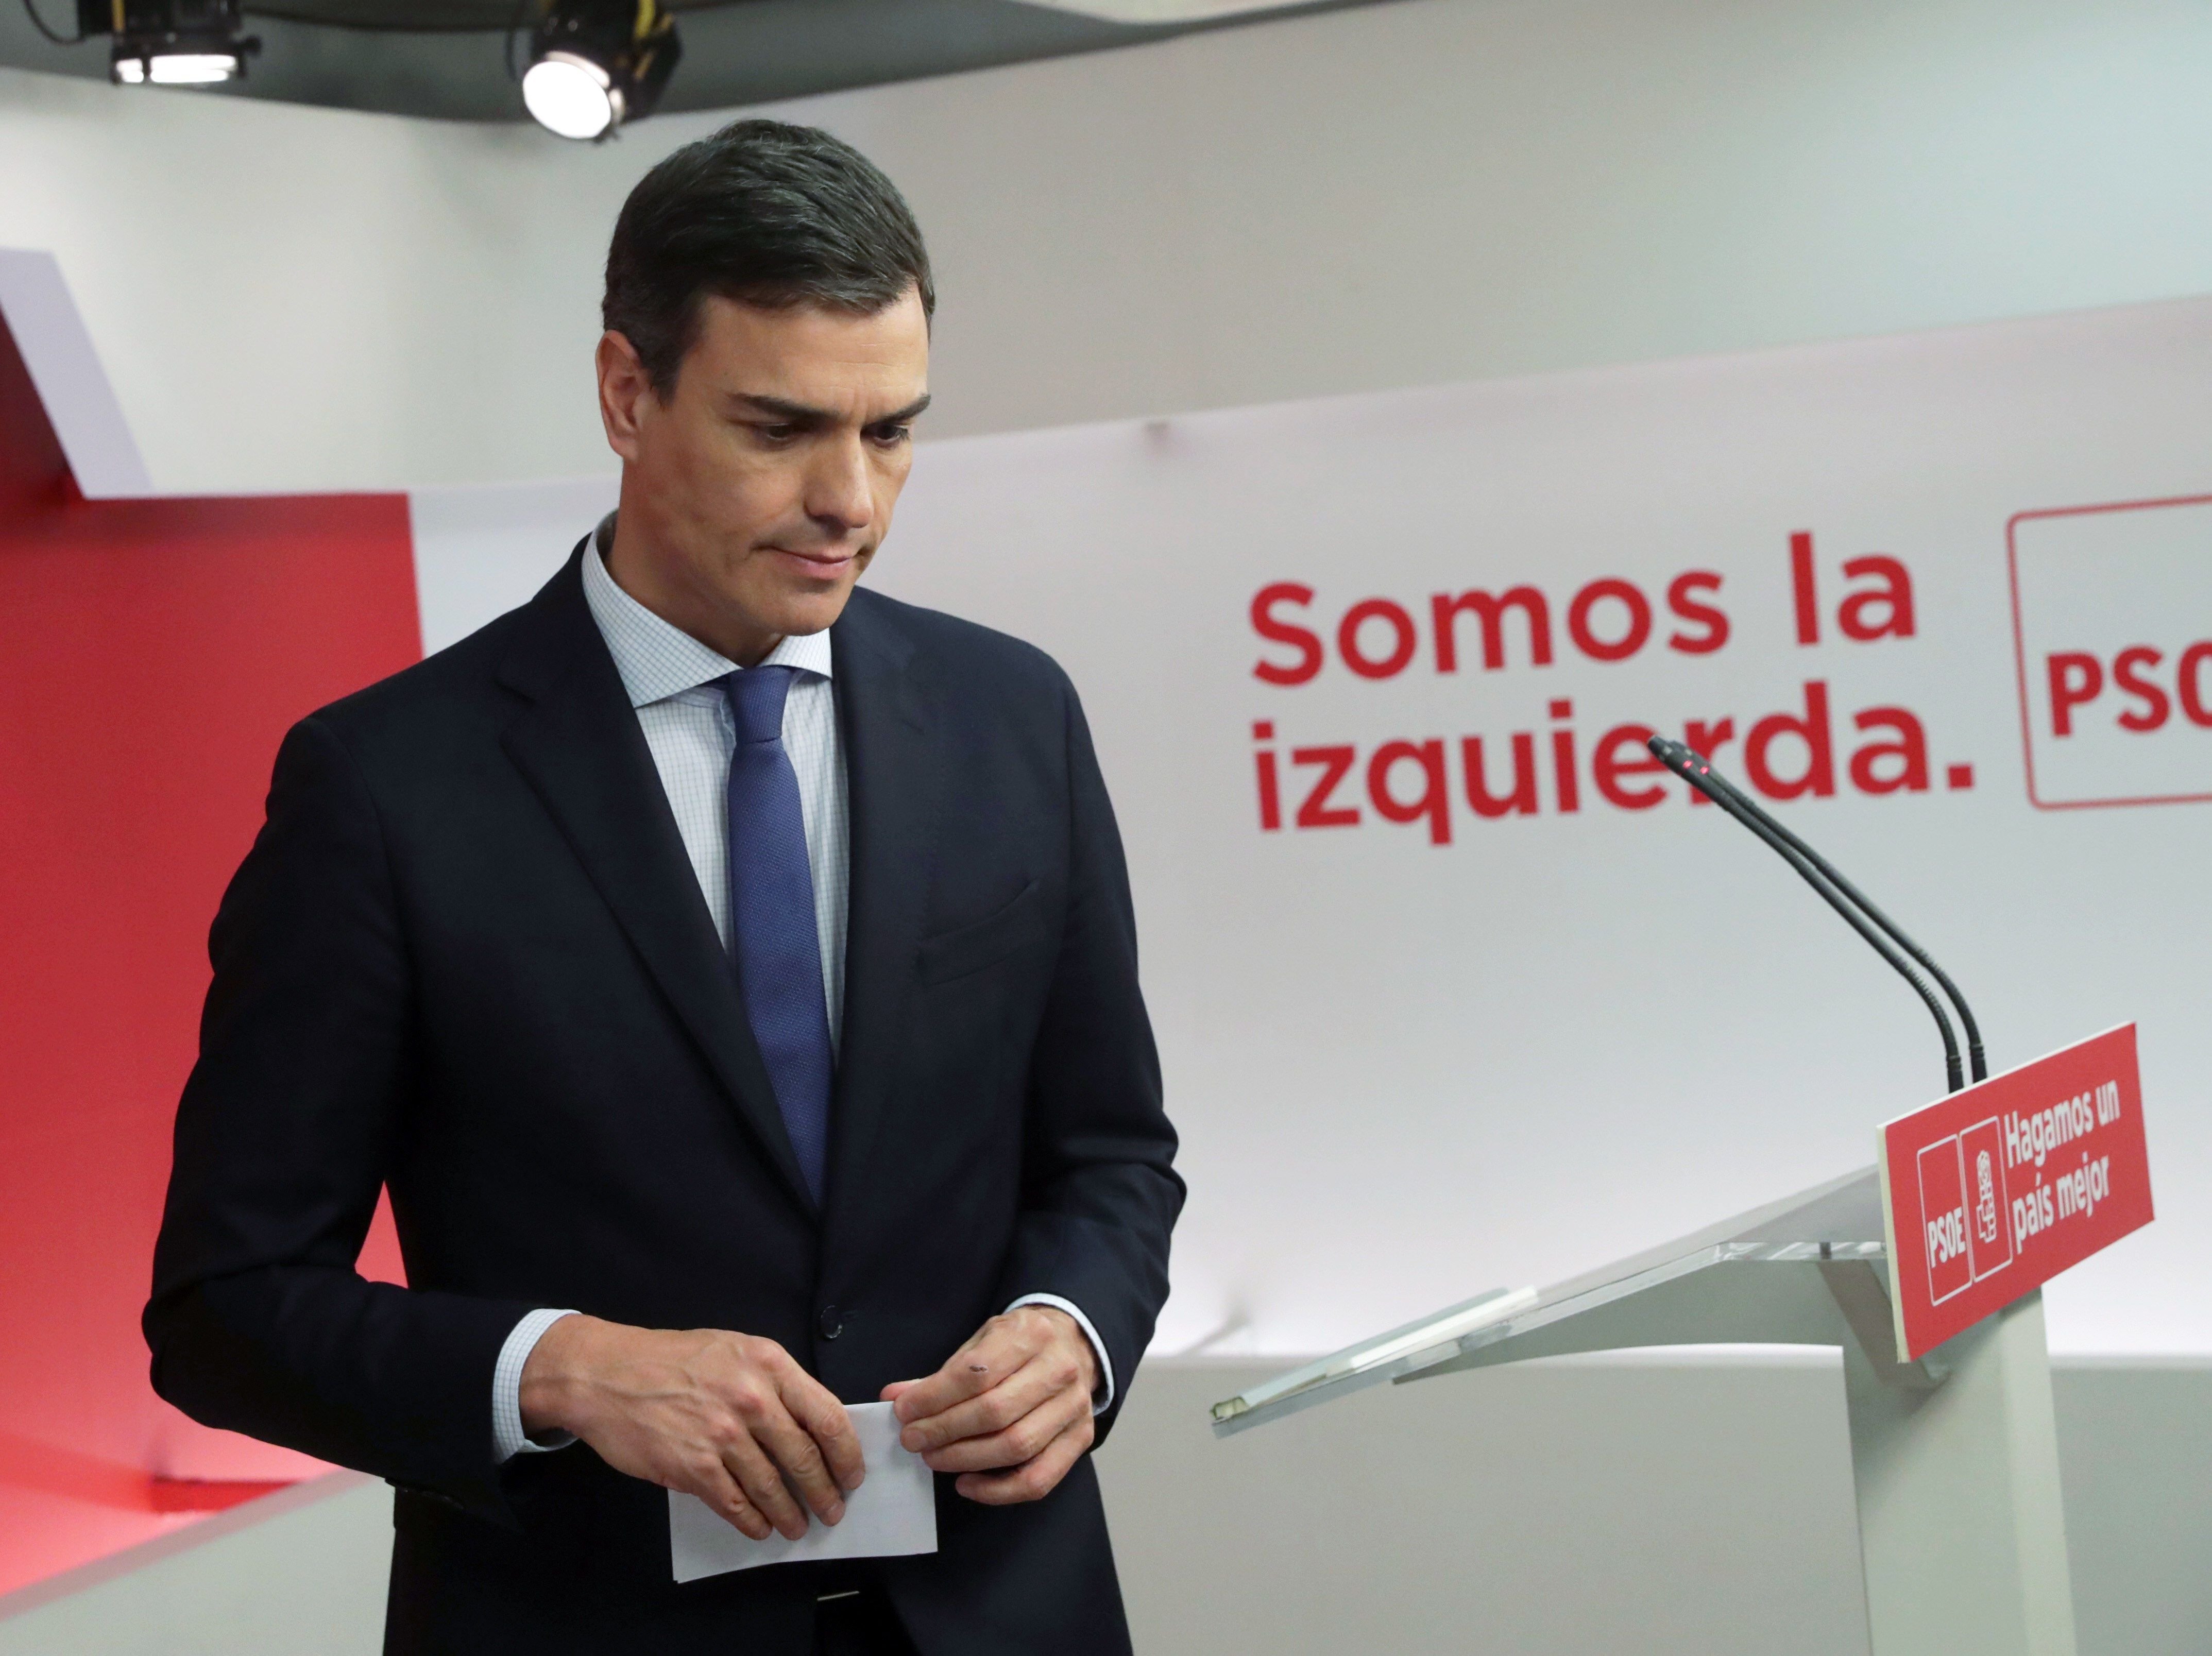 Sánchez convocará elecciones si gana la moción, pero evita aclarar cuándo